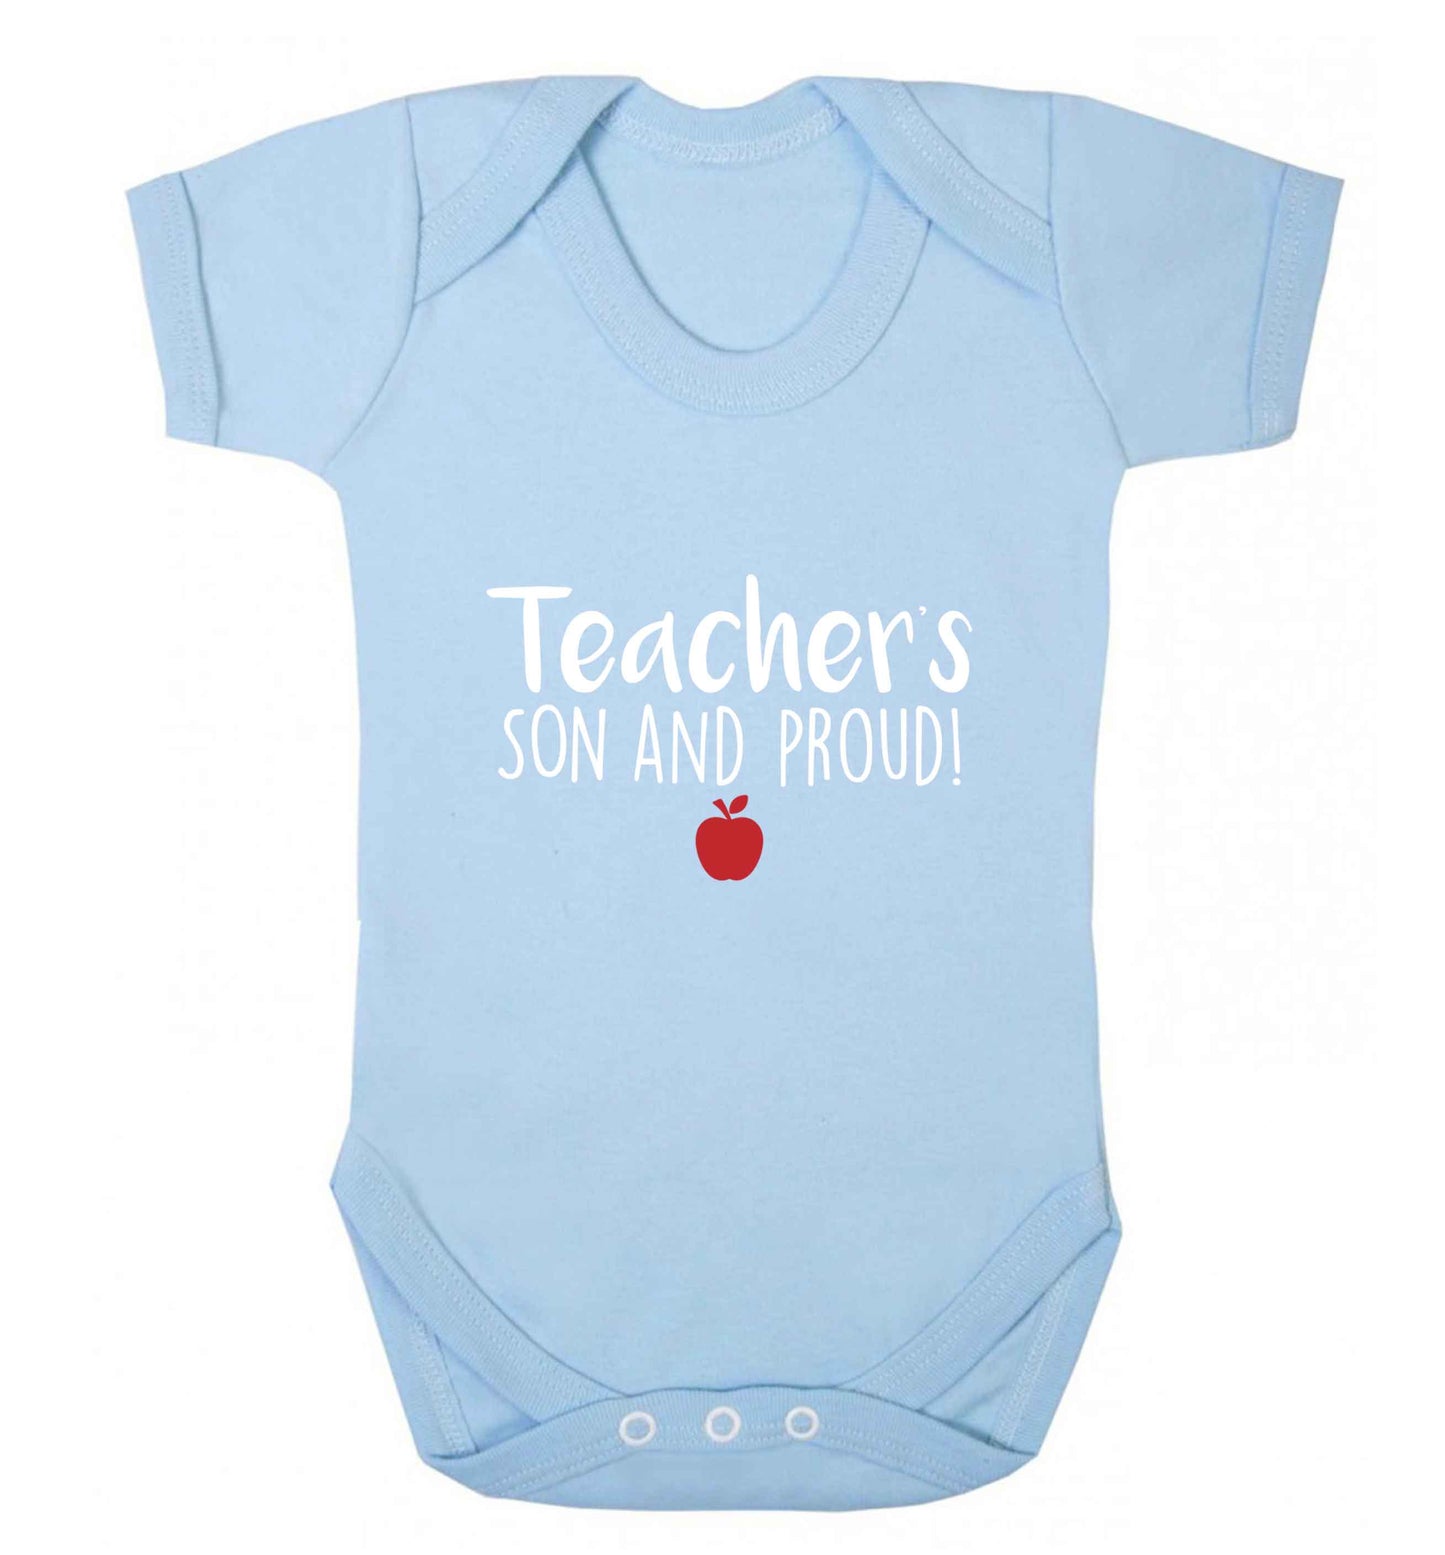 Teachers son and proud baby vest pale blue 18-24 months